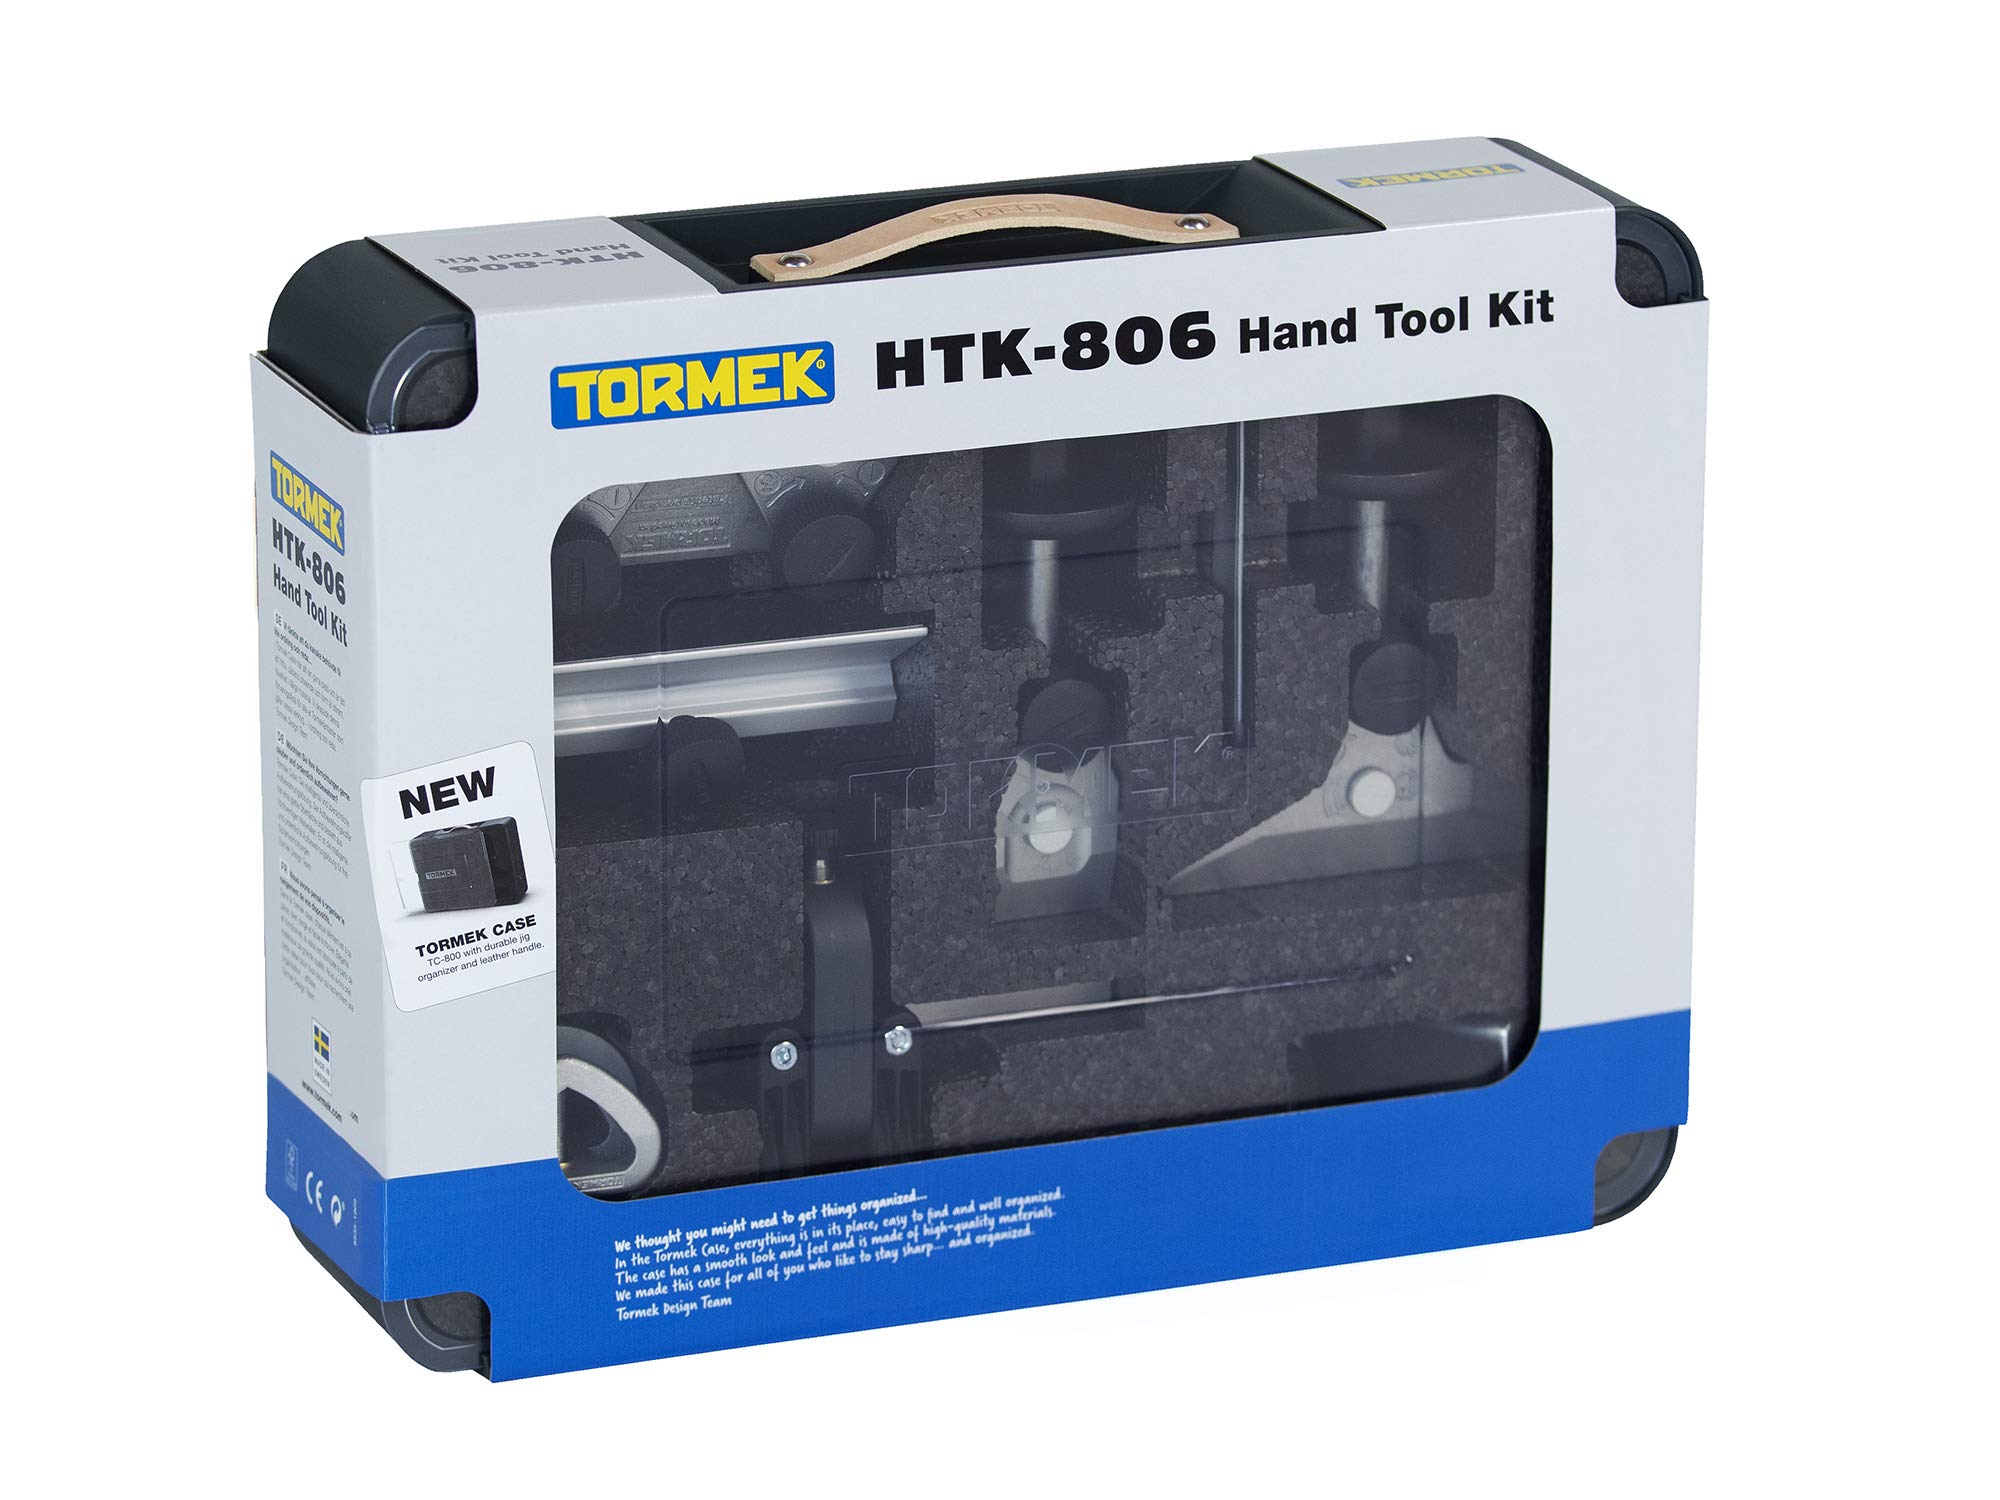 Tormek HTK-806 Hand Tool Kit - Sharpening Kit for Tormek Sharpening Systems - Knife Sharpener  Scissor Sharpener  Axe Sharpener